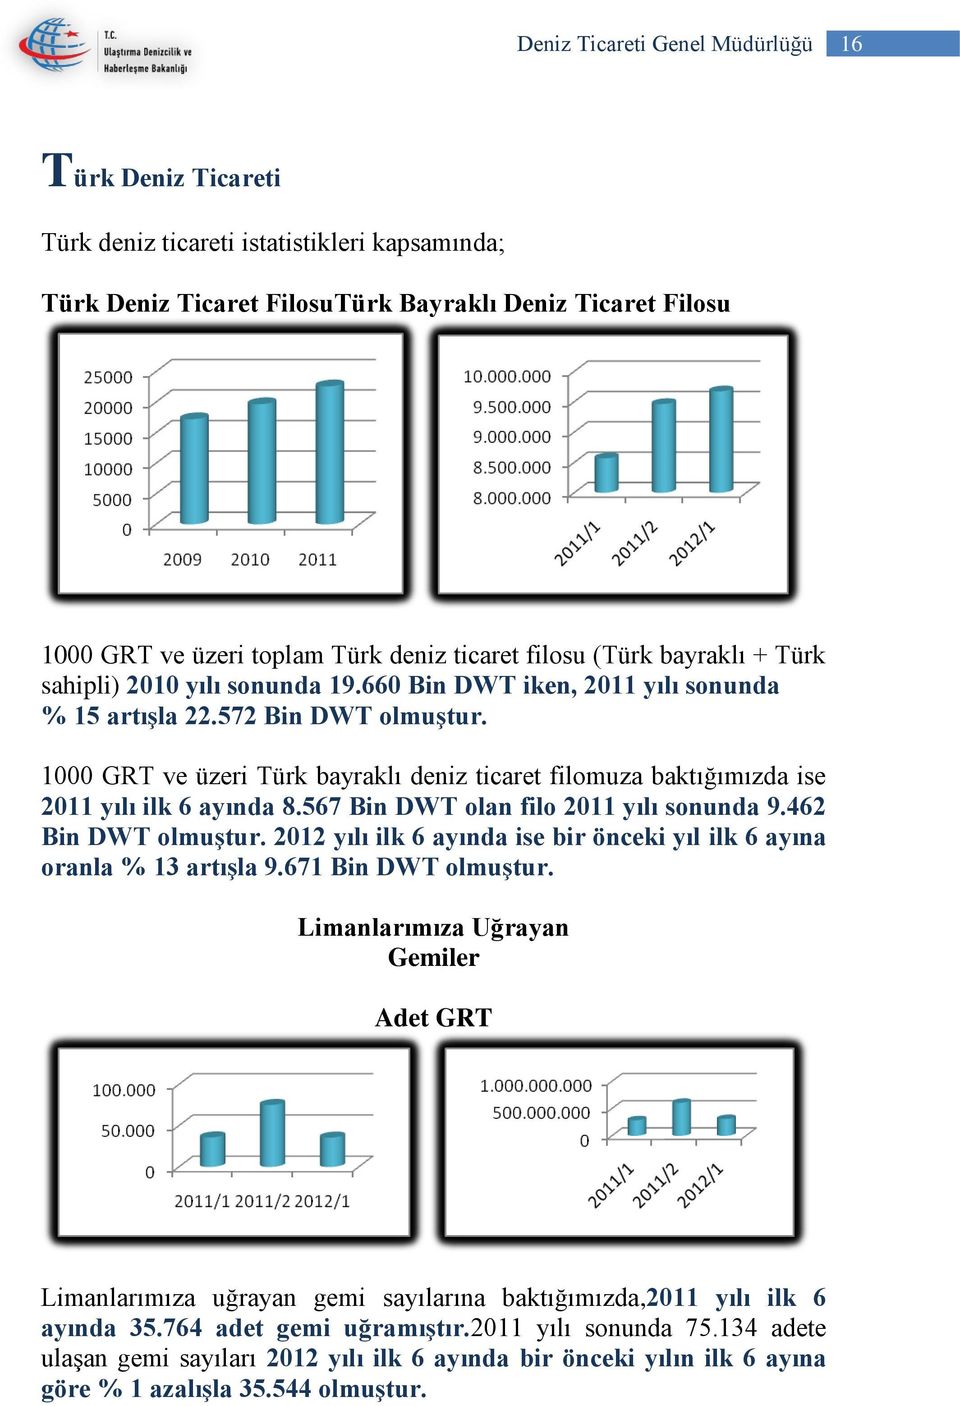 1000 GRT ve üzeri Türk bayraklı deniz ticaret filomuza baktığımızda ise 2011 yılı ilk 6 ayında 8.567 Bin DWT olan filo 2011 yılı sonunda 9.462 Bin DWT olmuştur.